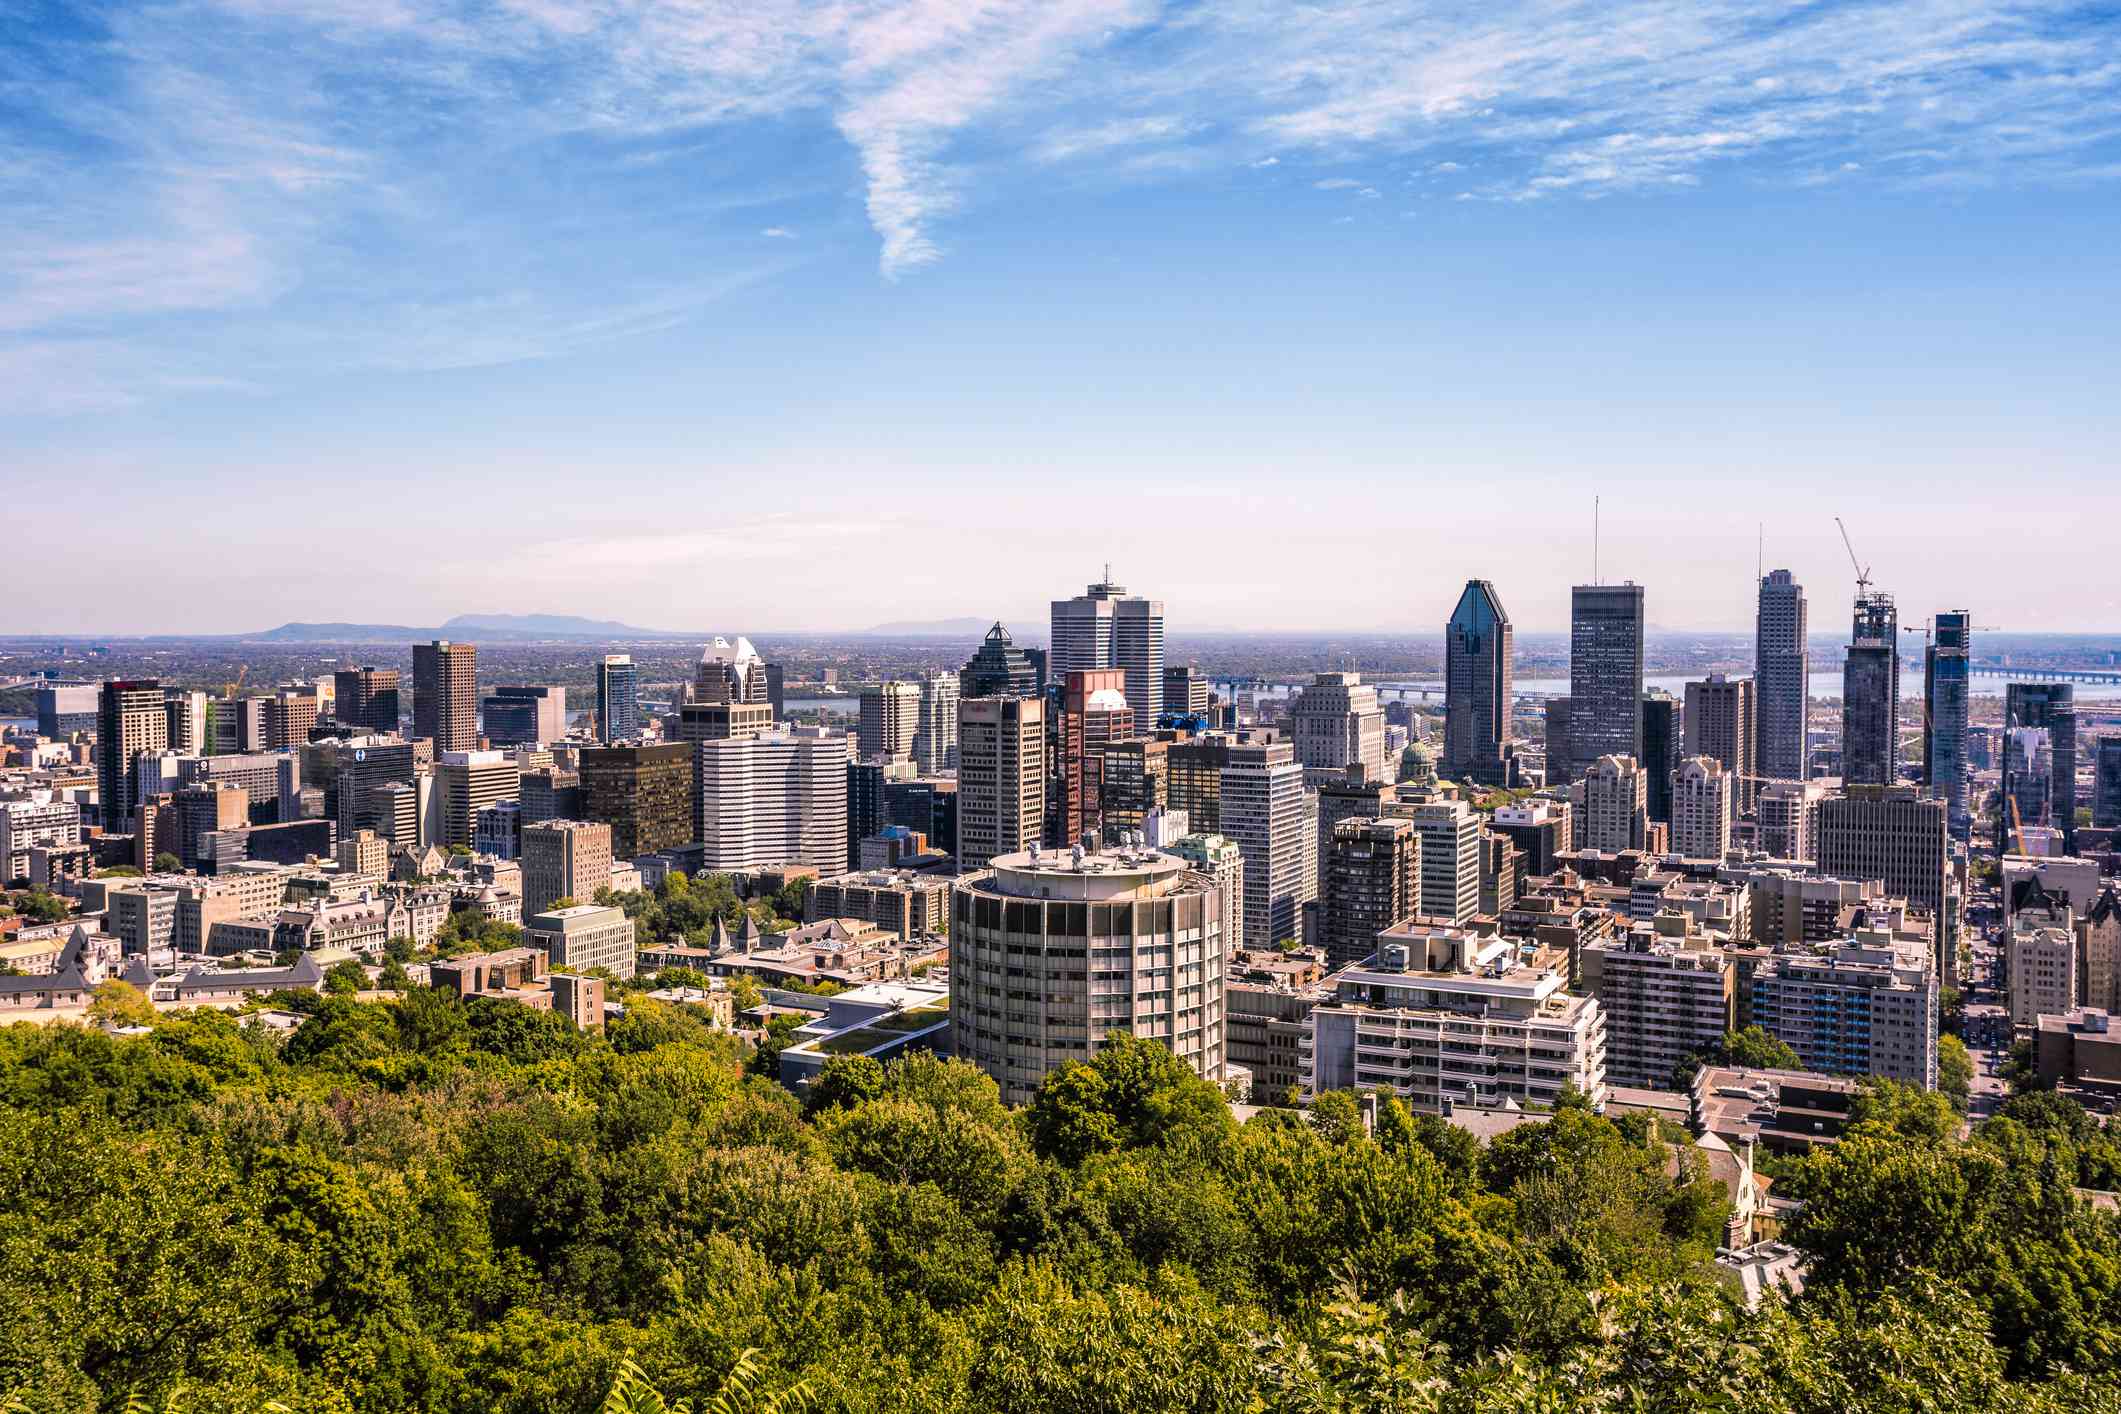 vista del centro de Montreal, los altos edificios de Canadá, los frondosos árboles verdes y el cielo azul con ligeras nubes blancas tomada desde el Monte Royal